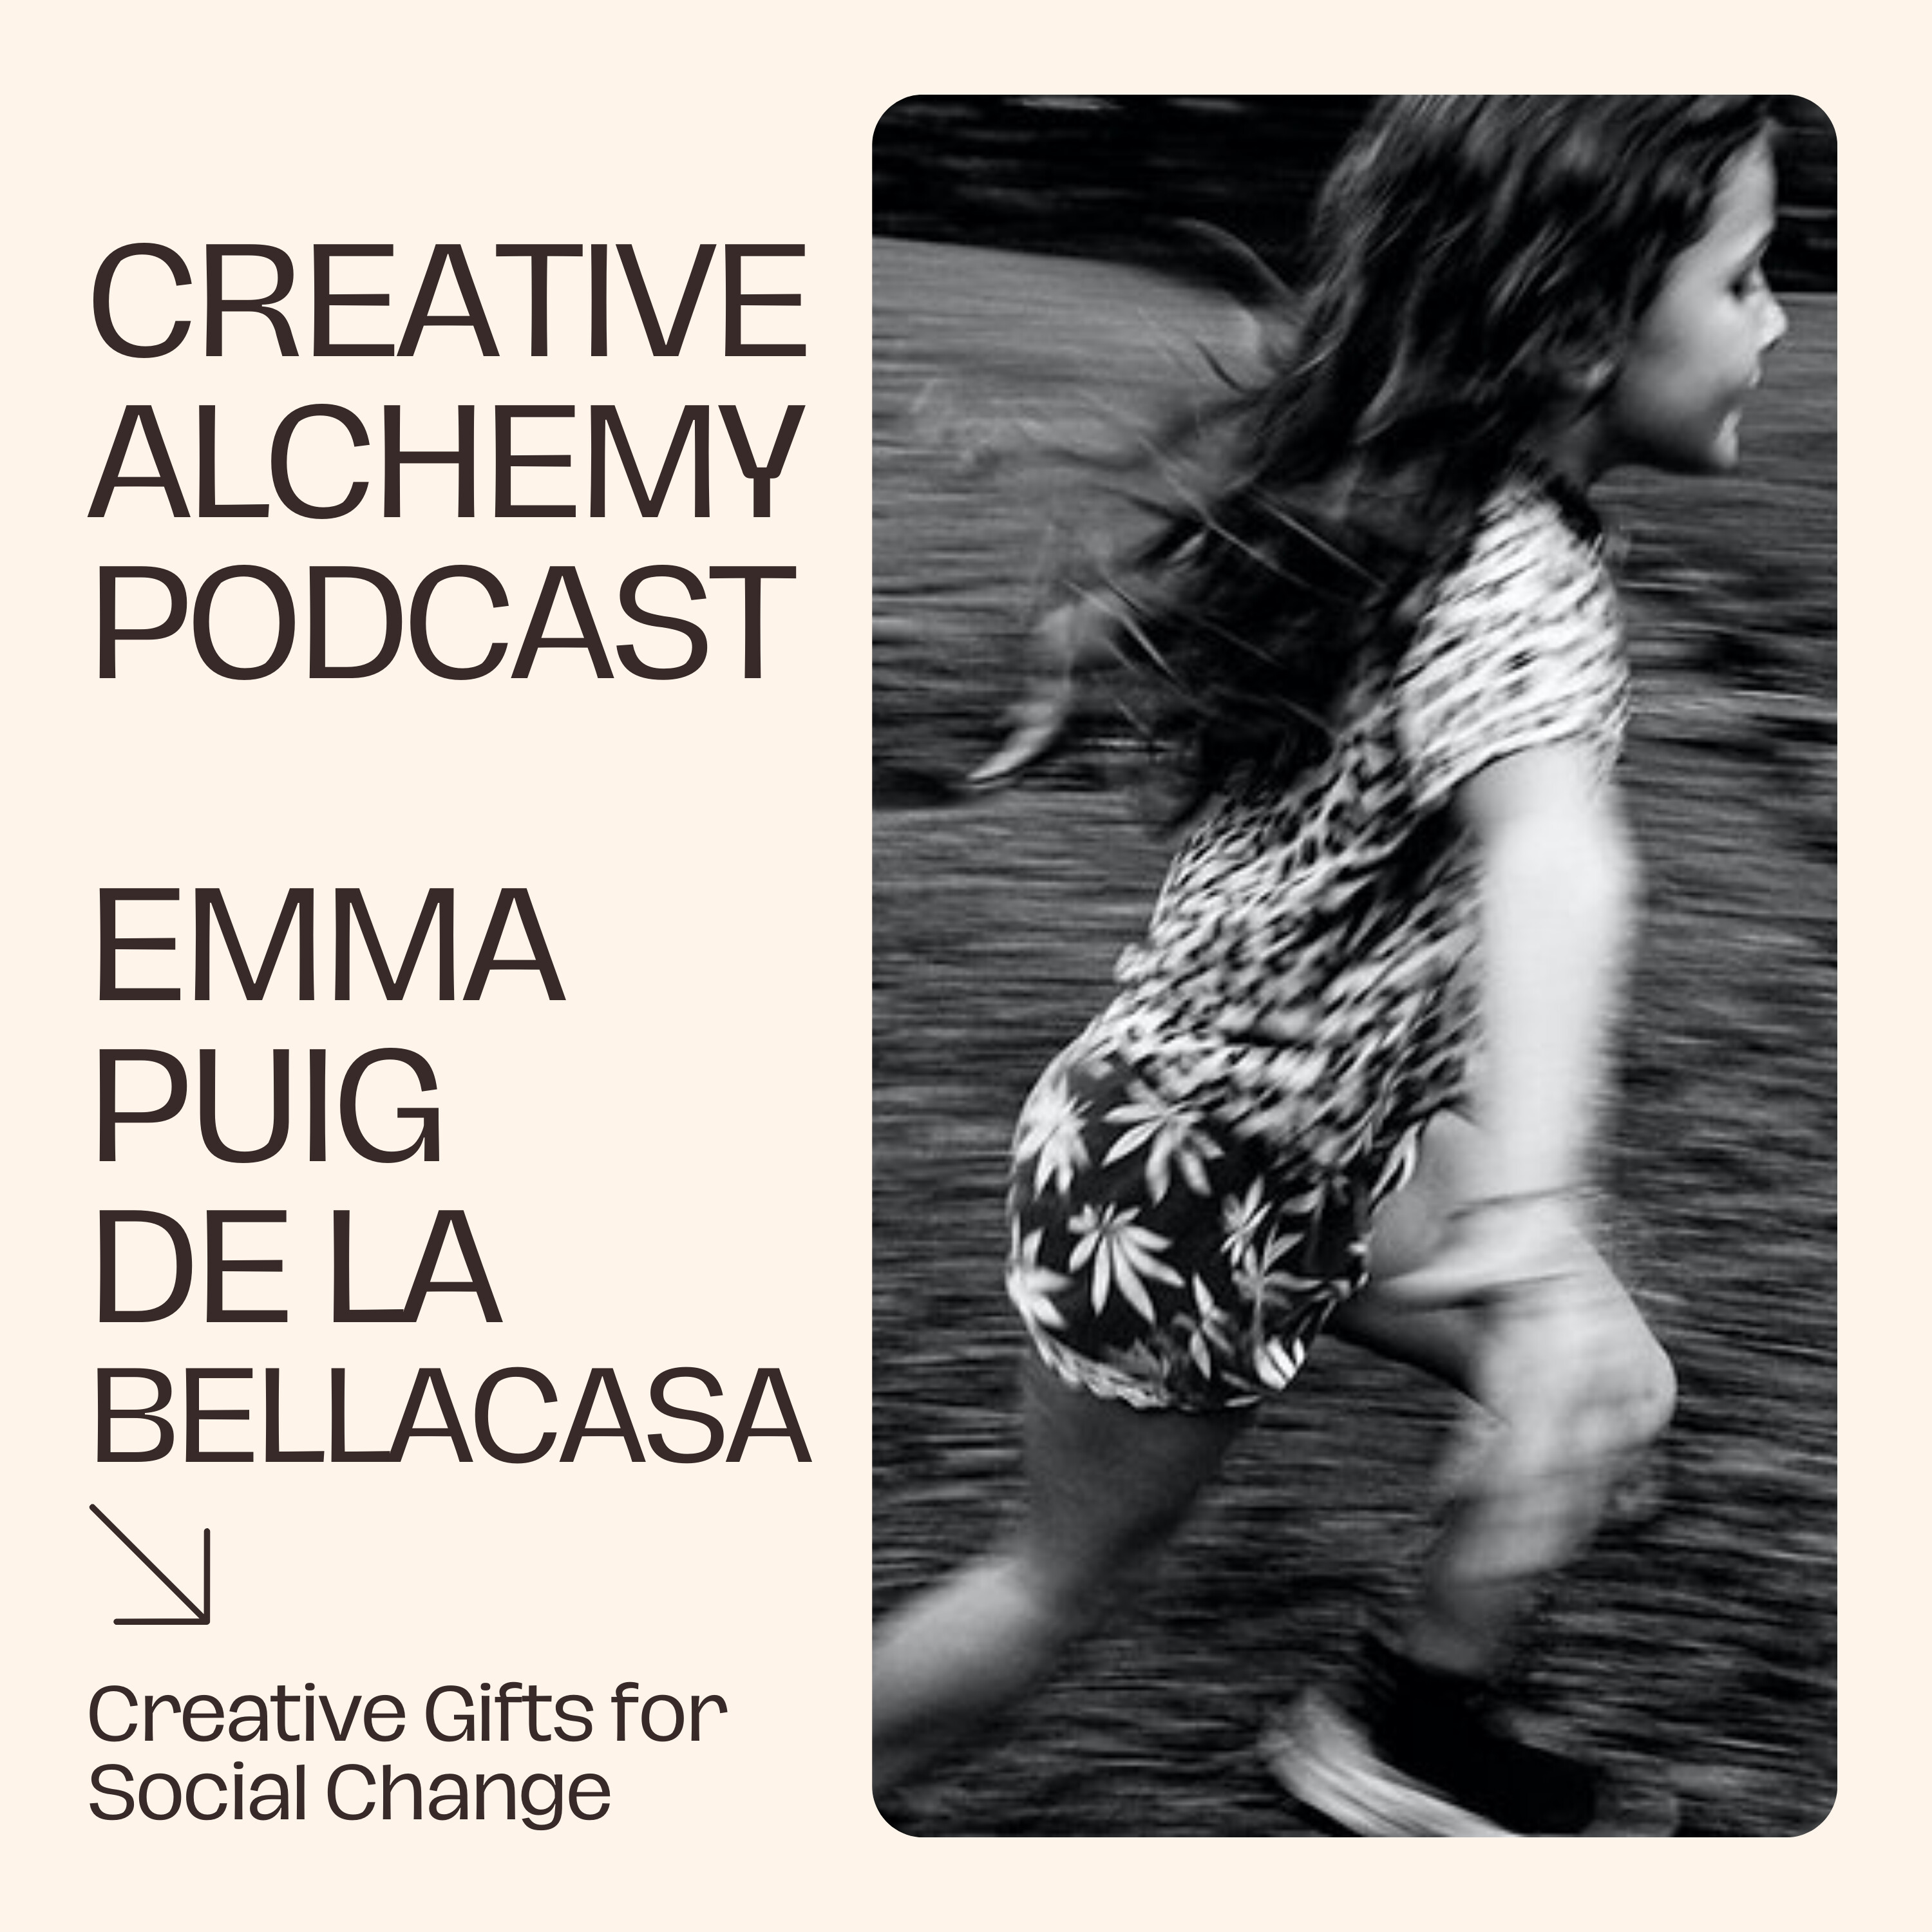 Creative Gifts for Social Change with Emma Puig de la Bellacasa Image